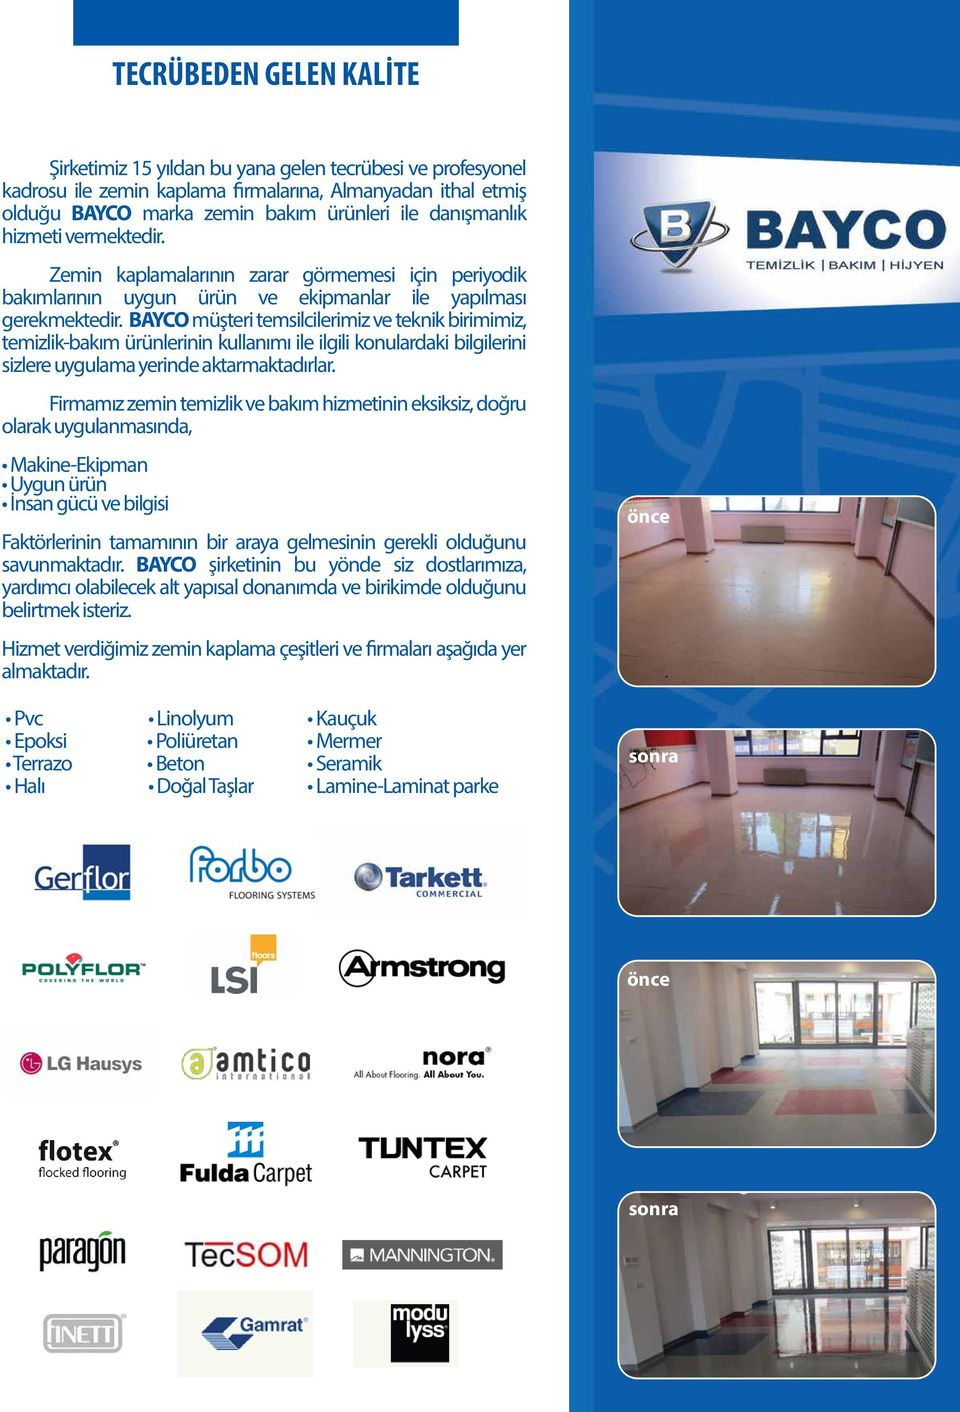 BAYCO müşteri temsilcilerimiz ve teknik birimimiz, temizlik-bakım ürünlerinin kullanımı ile ilgili konulardaki bilgilerini sizlere uygulama yerinde aktarmaktadırlar.